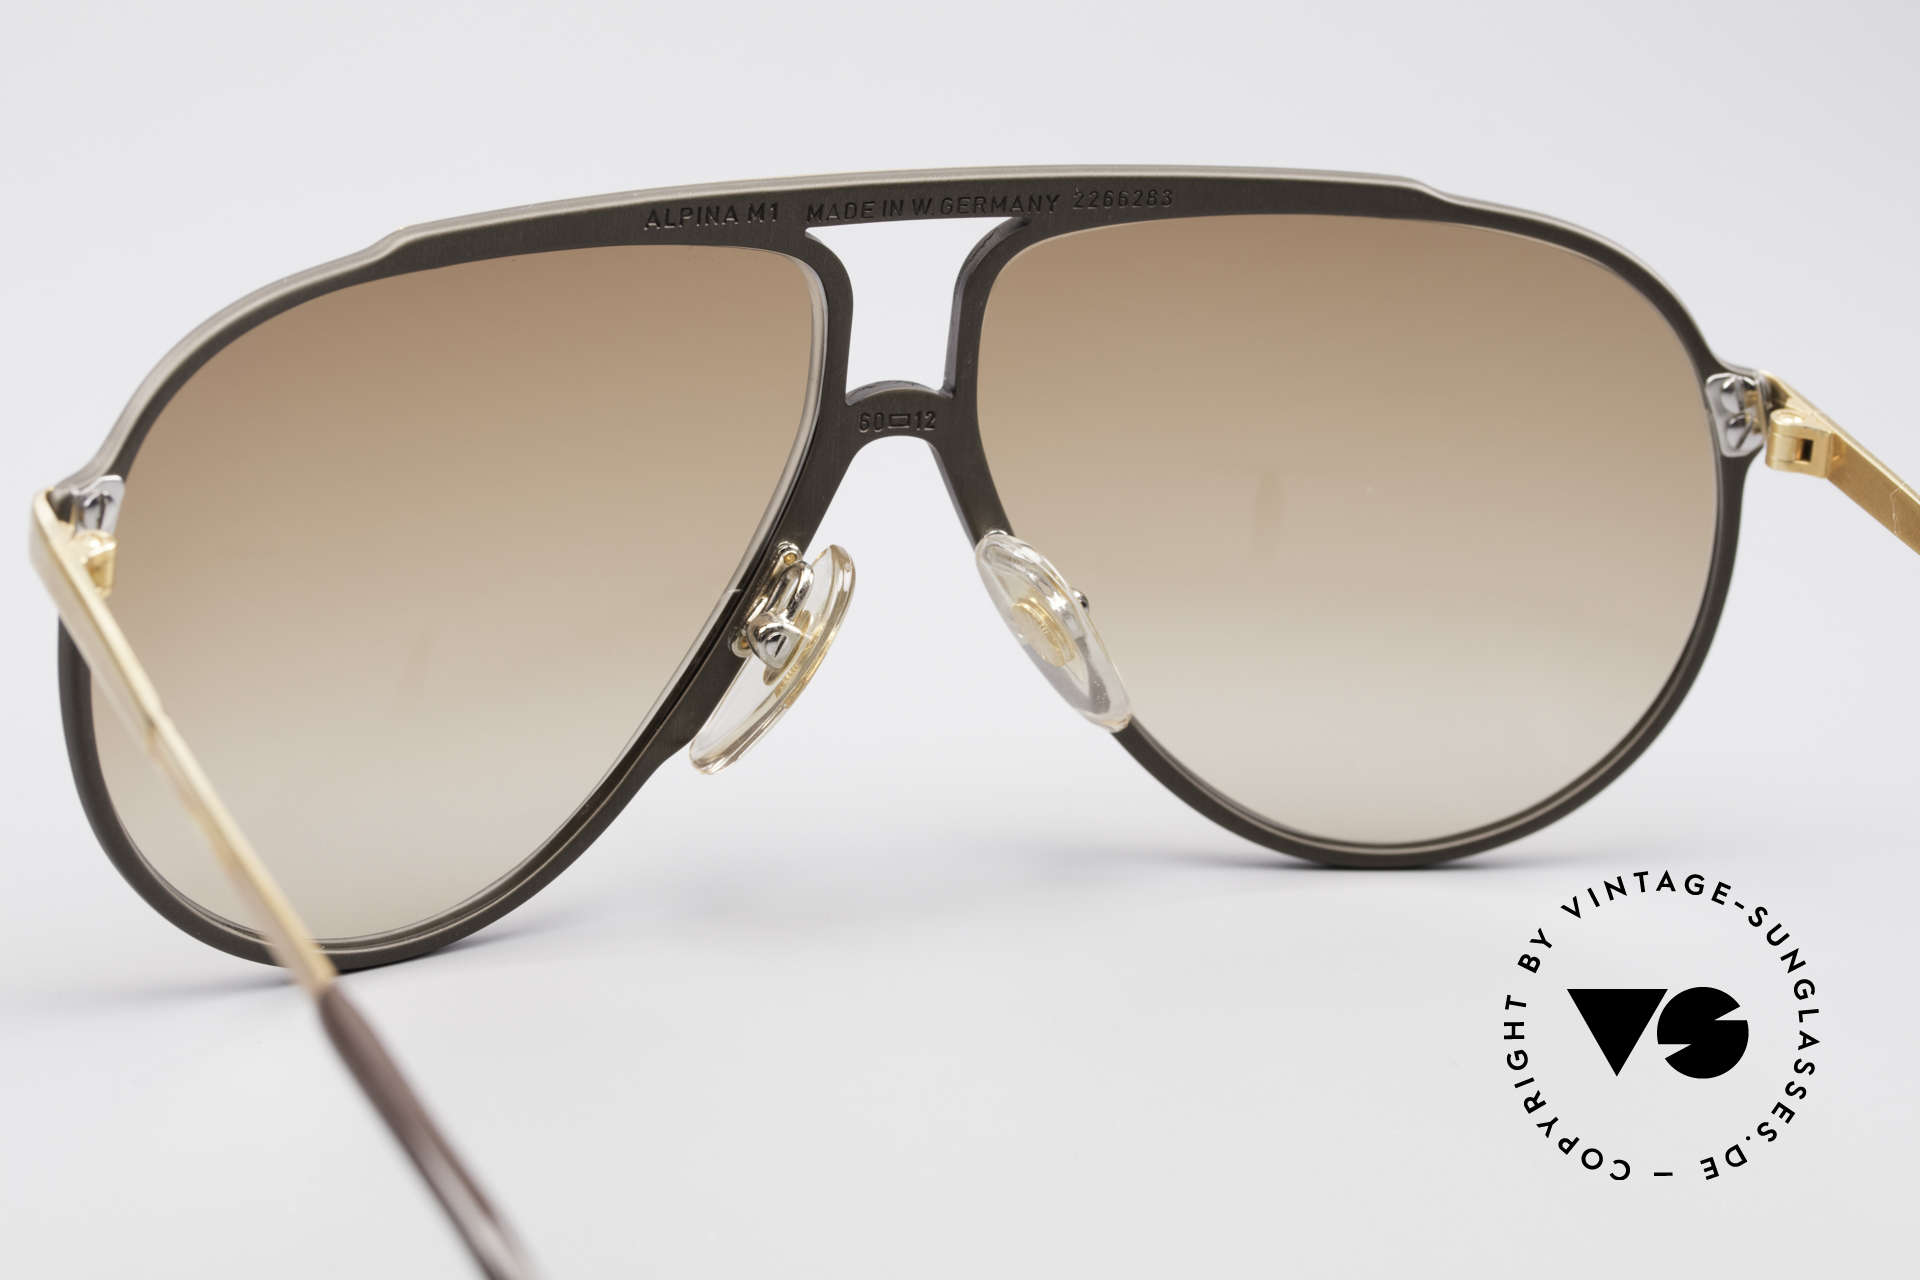 Alpina M1 West Germany Sonnenbrille, ungetragenes Sammlerstück mit Etui von Versace, Passend für Herren und Damen